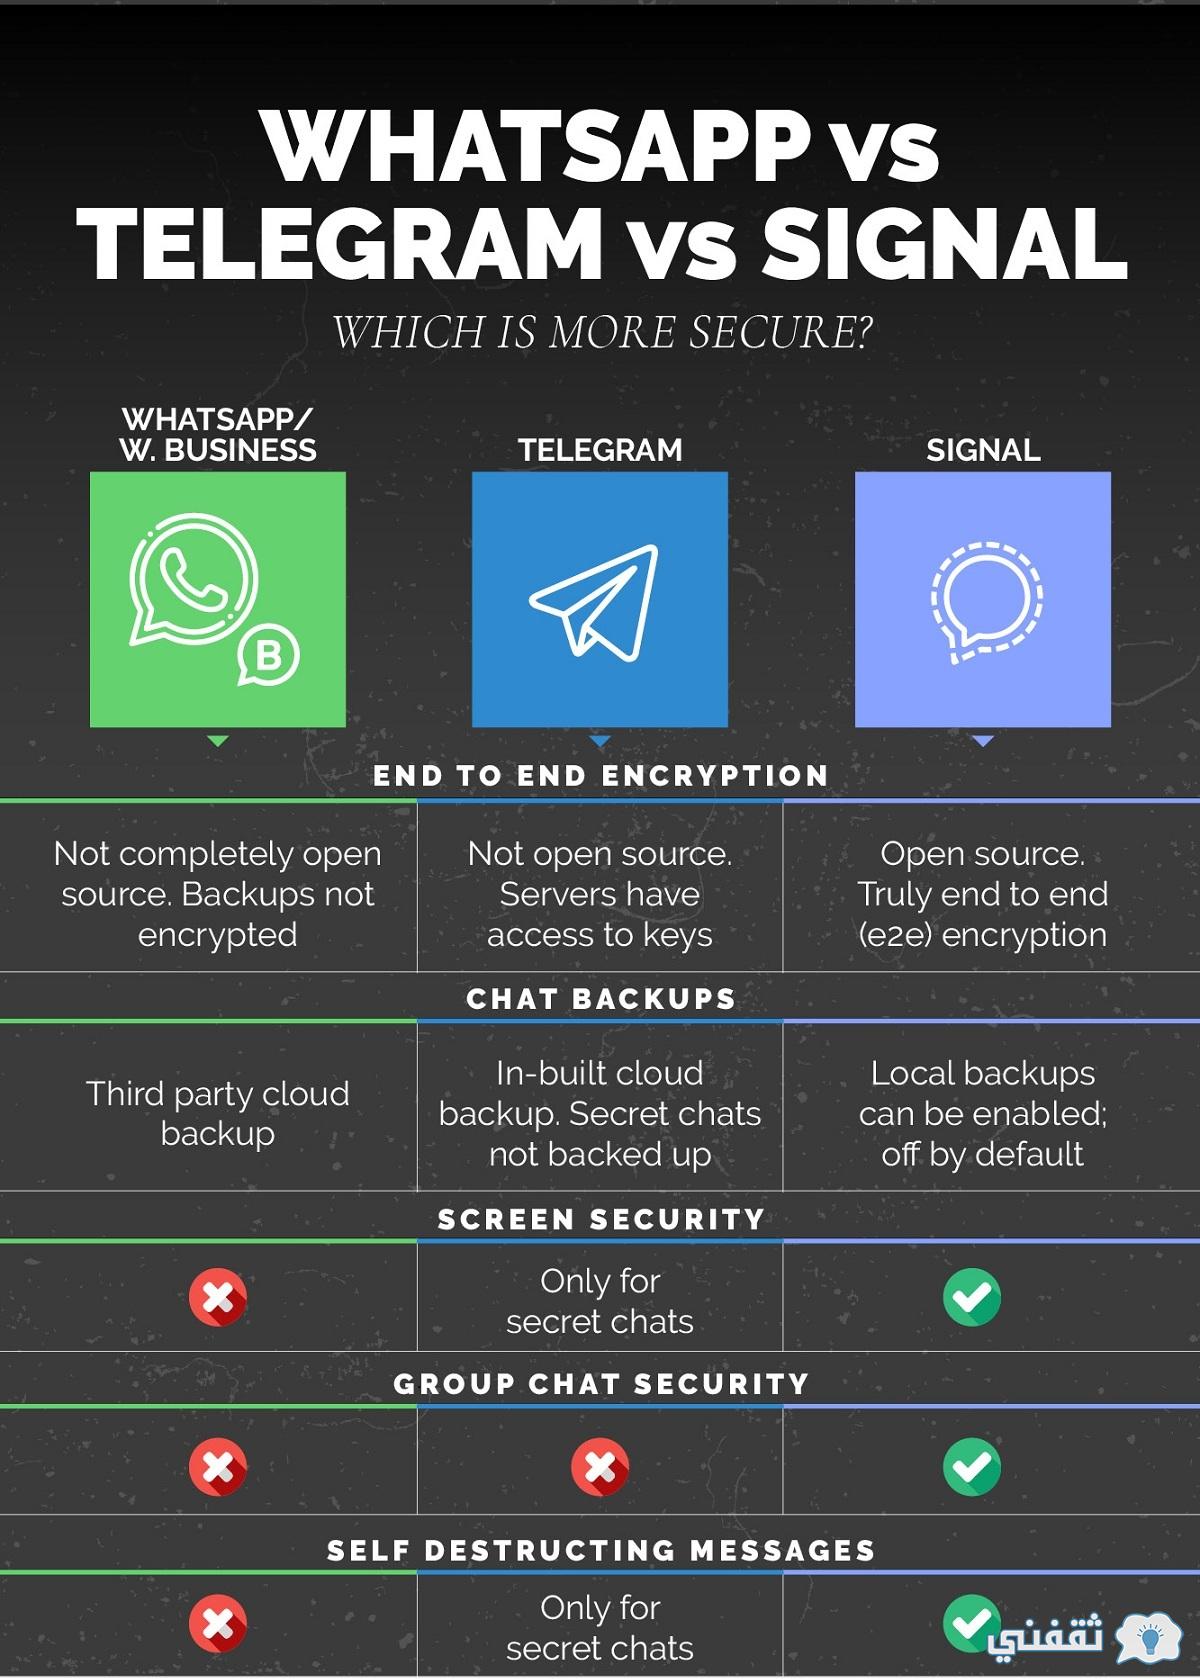 signal vs telegram vs whatsapp 2017